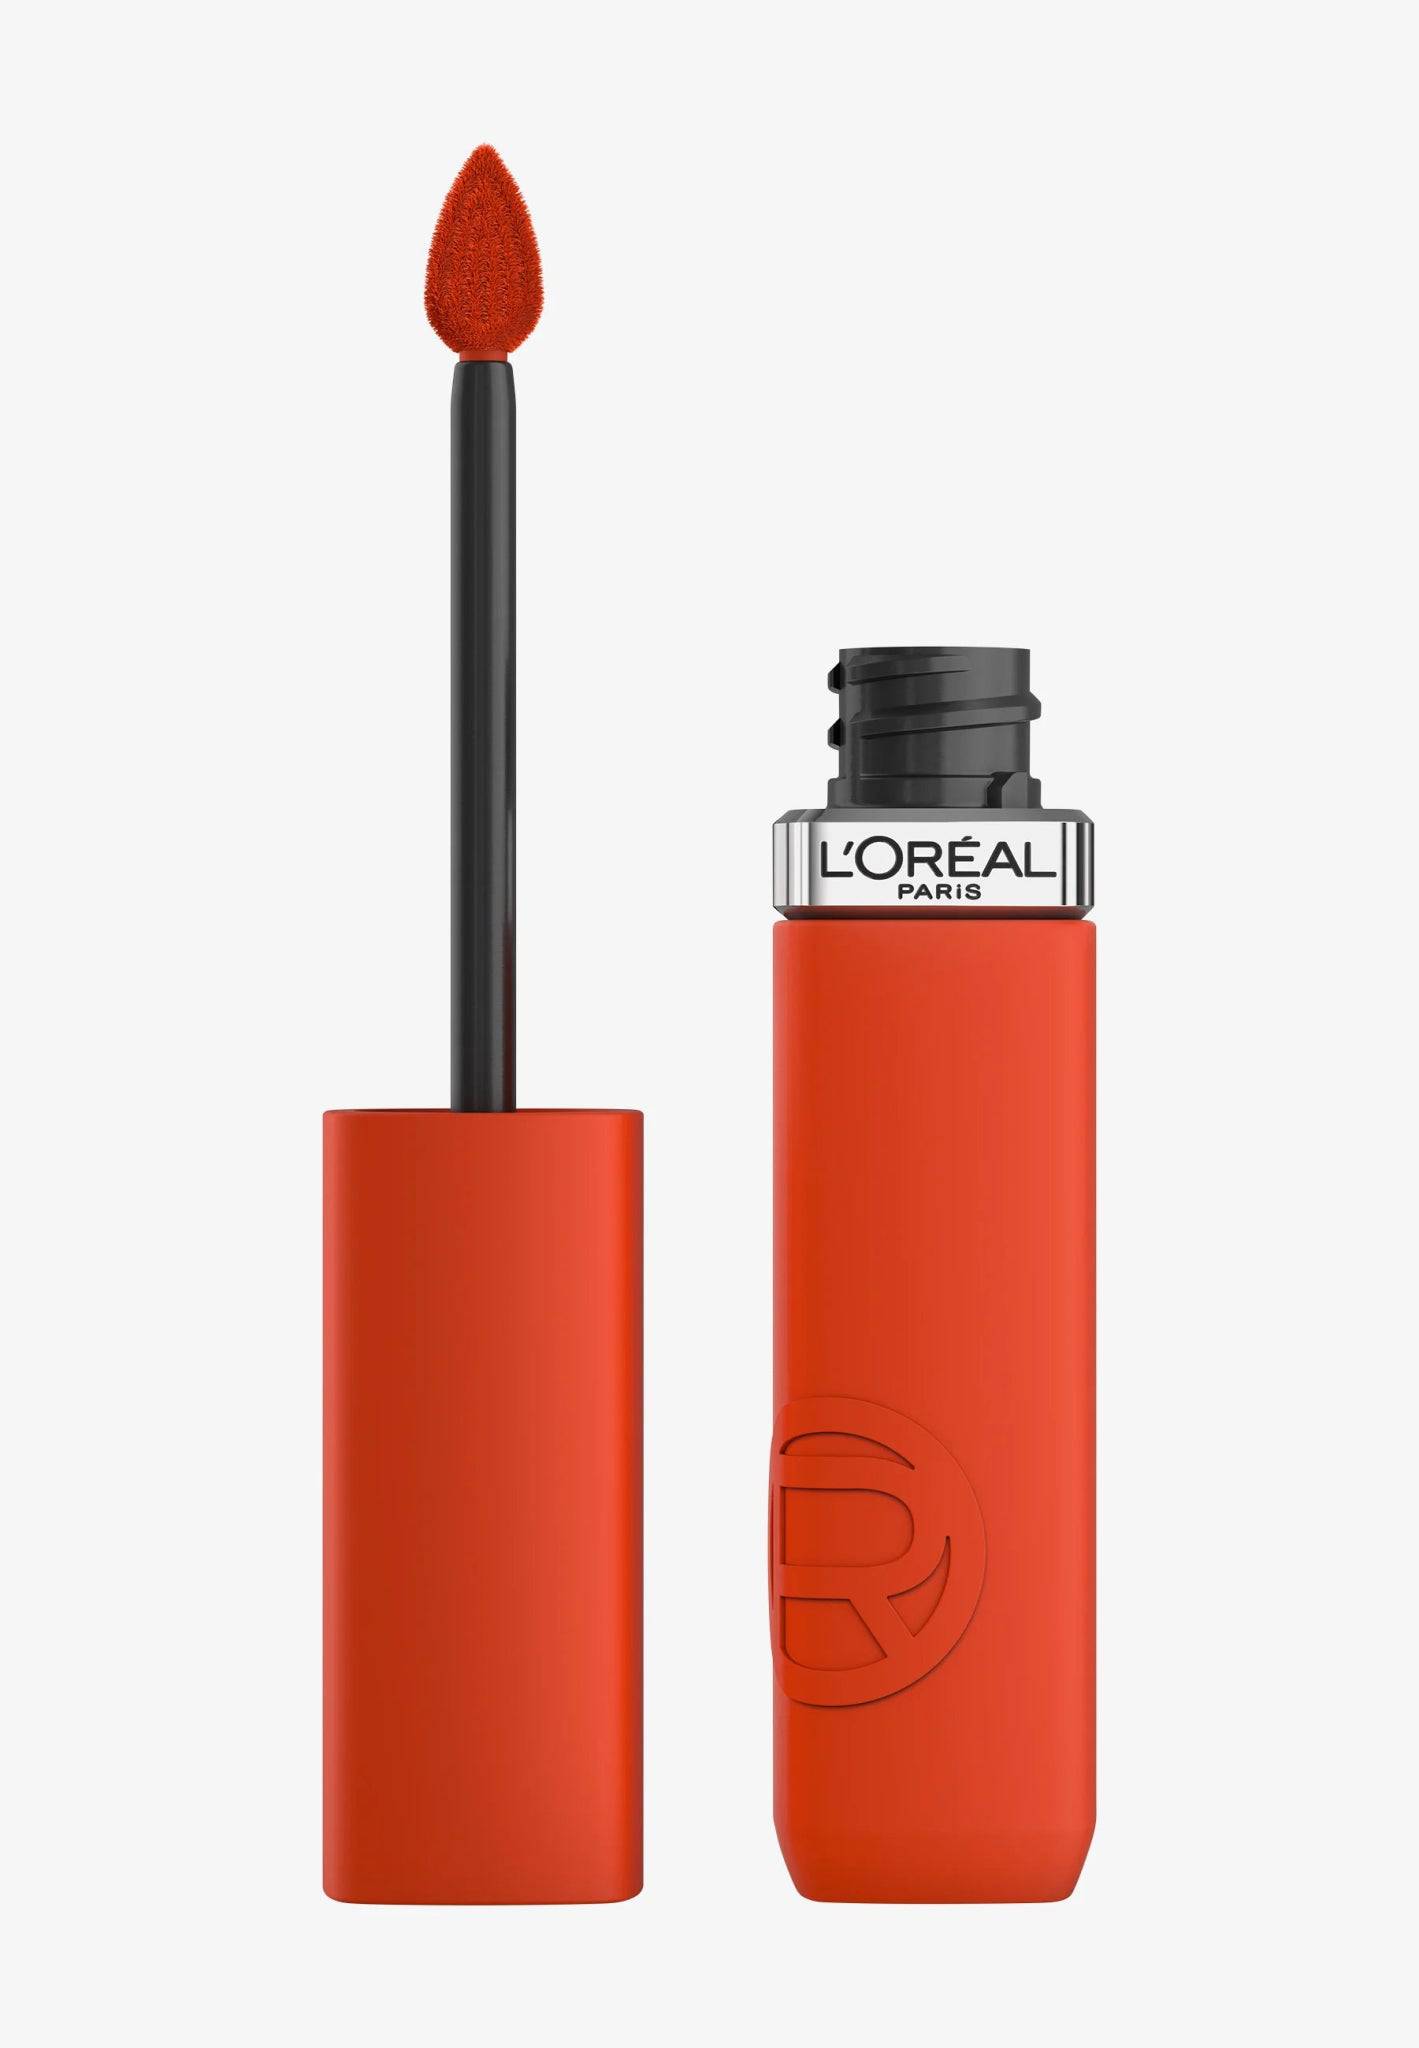 L&#39;Oréal Infaillible Matte Resistance - Jasmine Parfums- [ean]